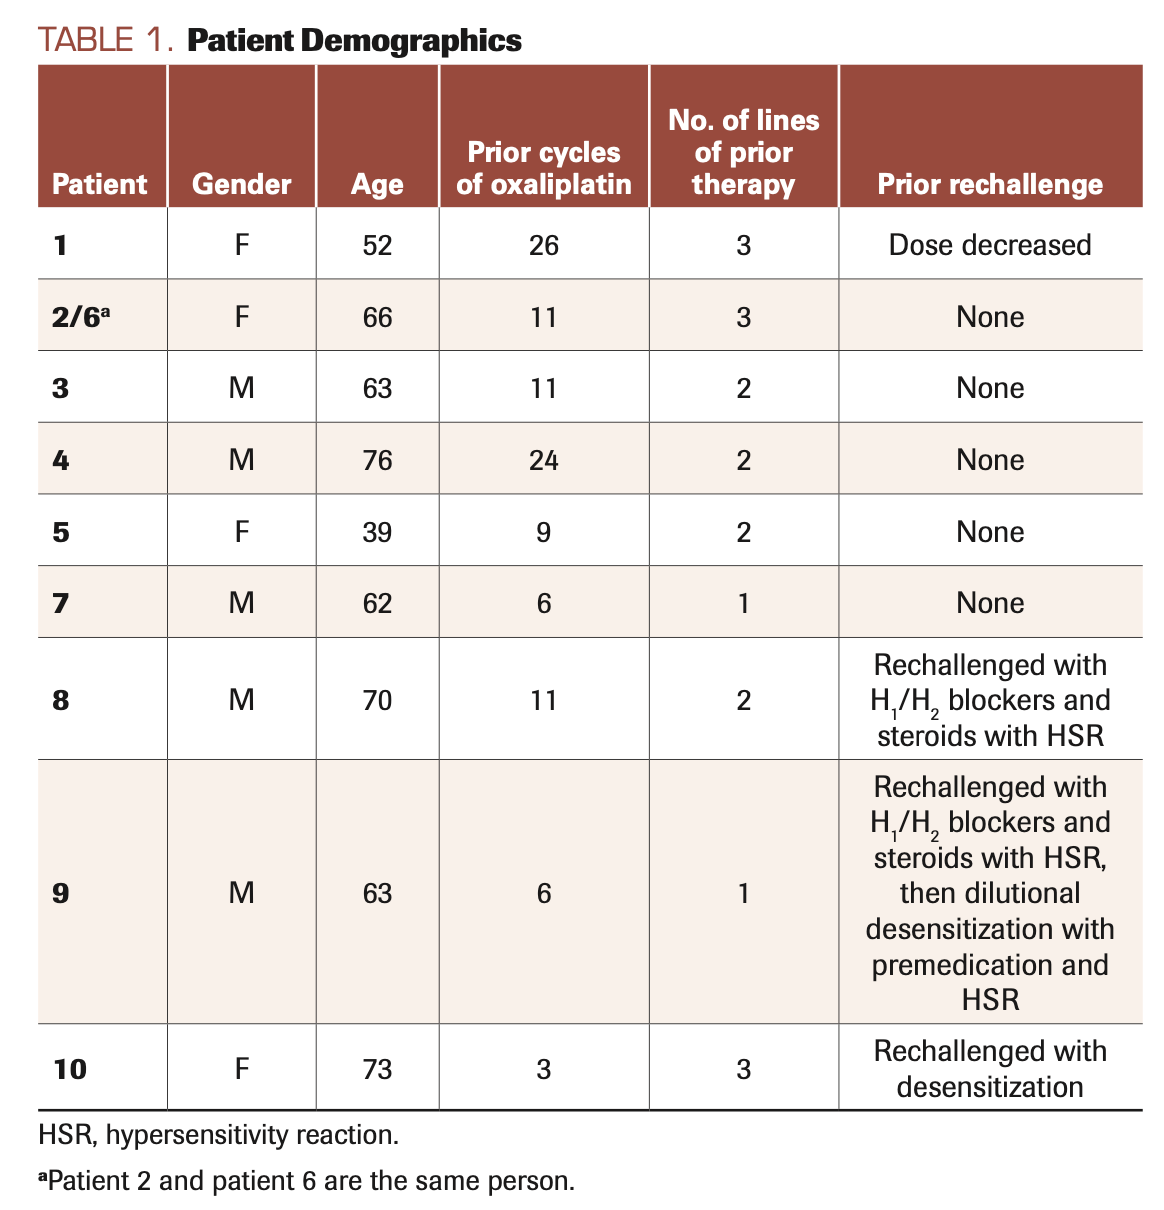 TABLE 1. Patient Demographics